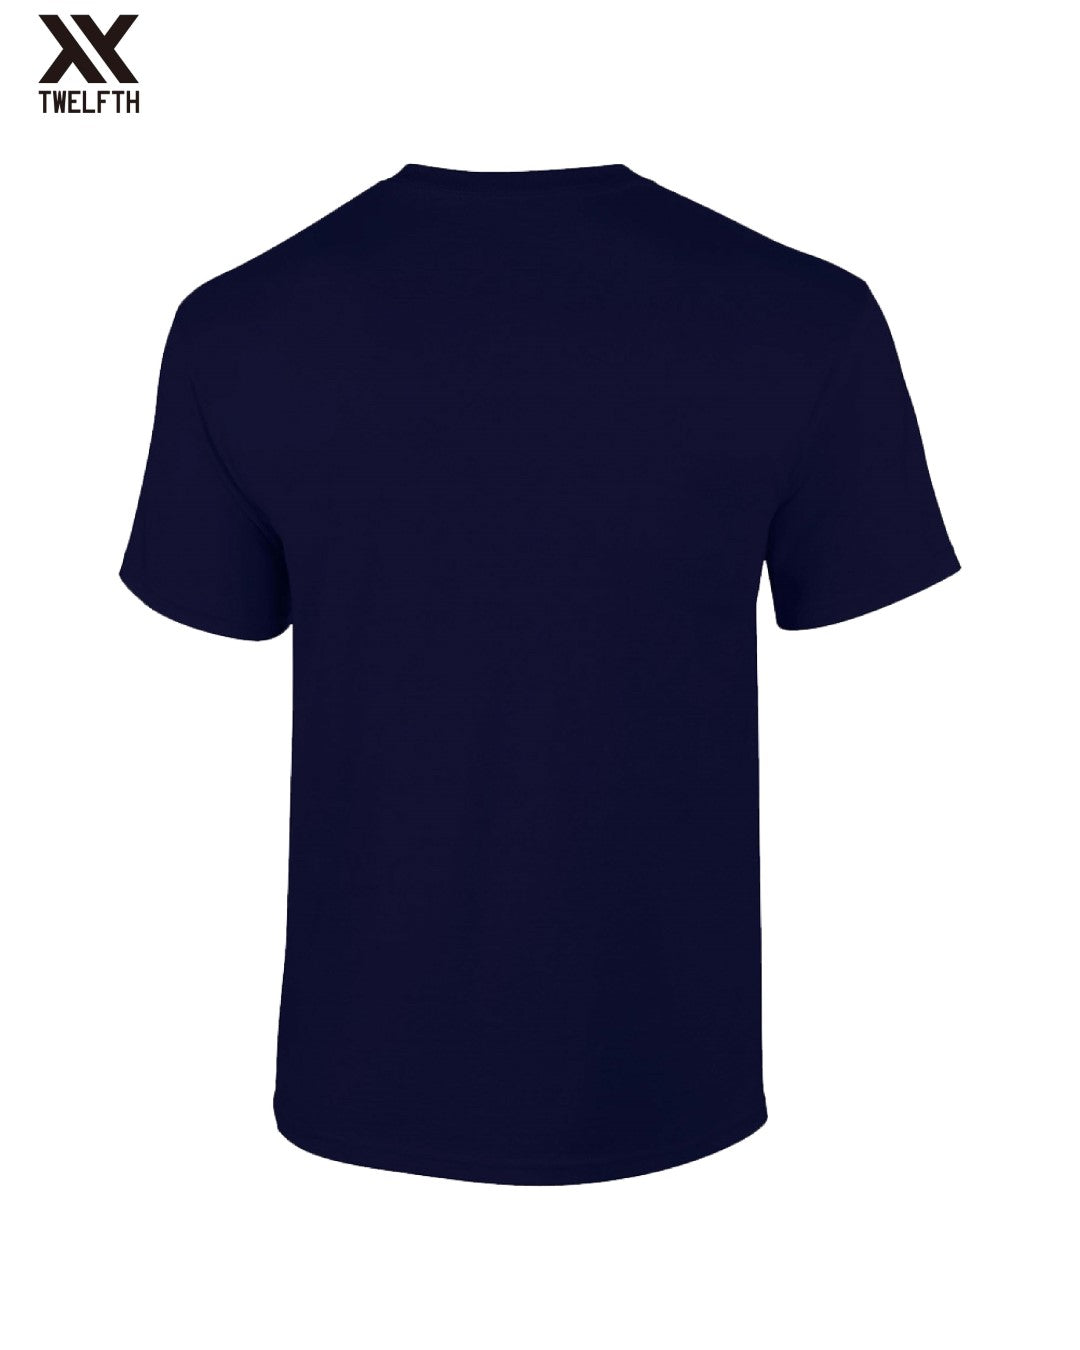 Boca Juniors Crest T-Shirt - Mens